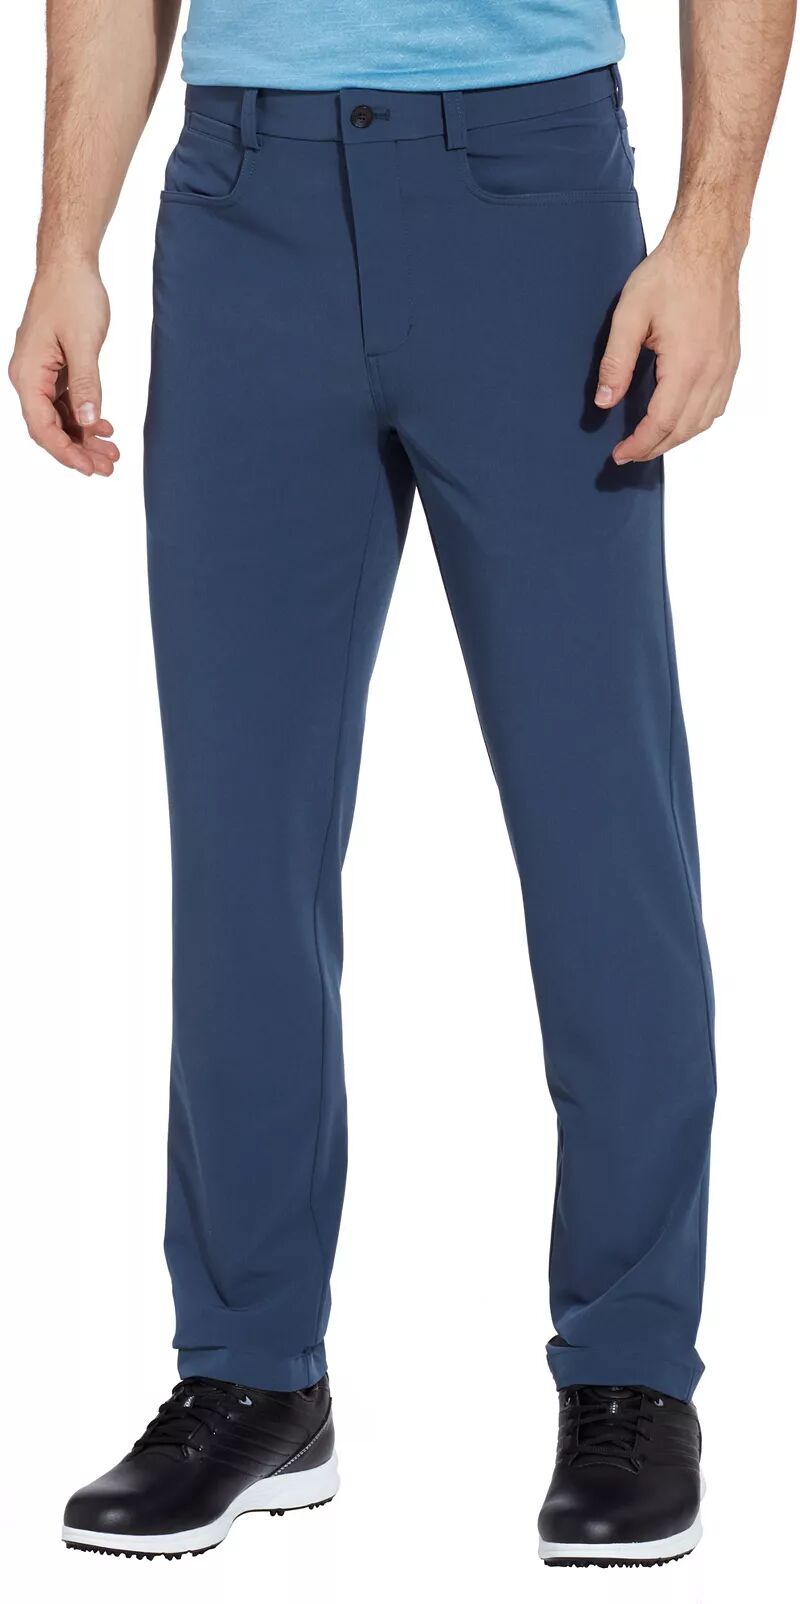 Мужские брюки для гольфа Walter Hagen Performance 11 с 5 карманами, серый